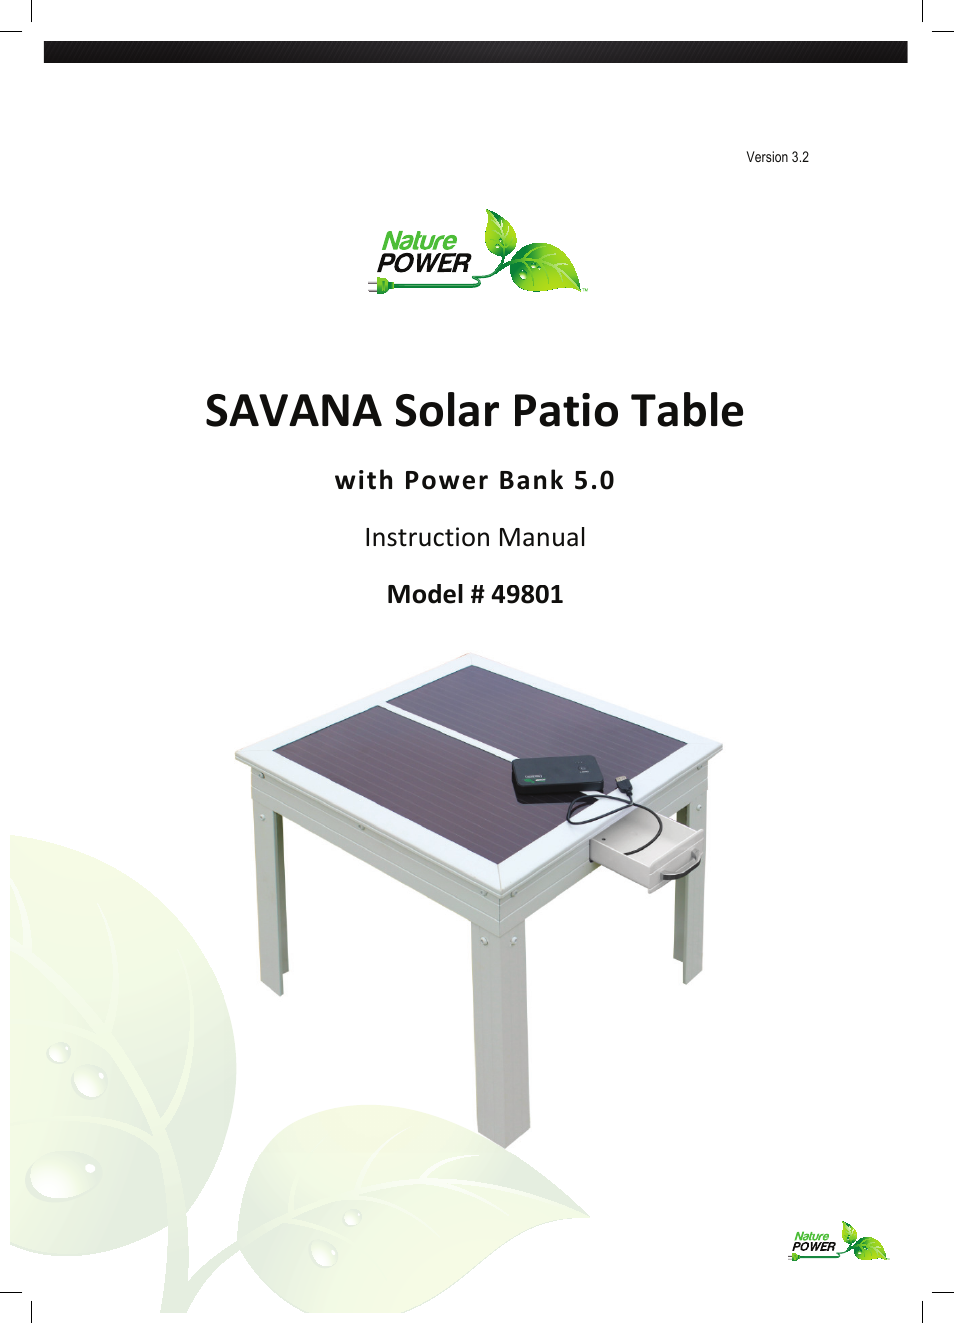 SAVANA Solar Patio Table